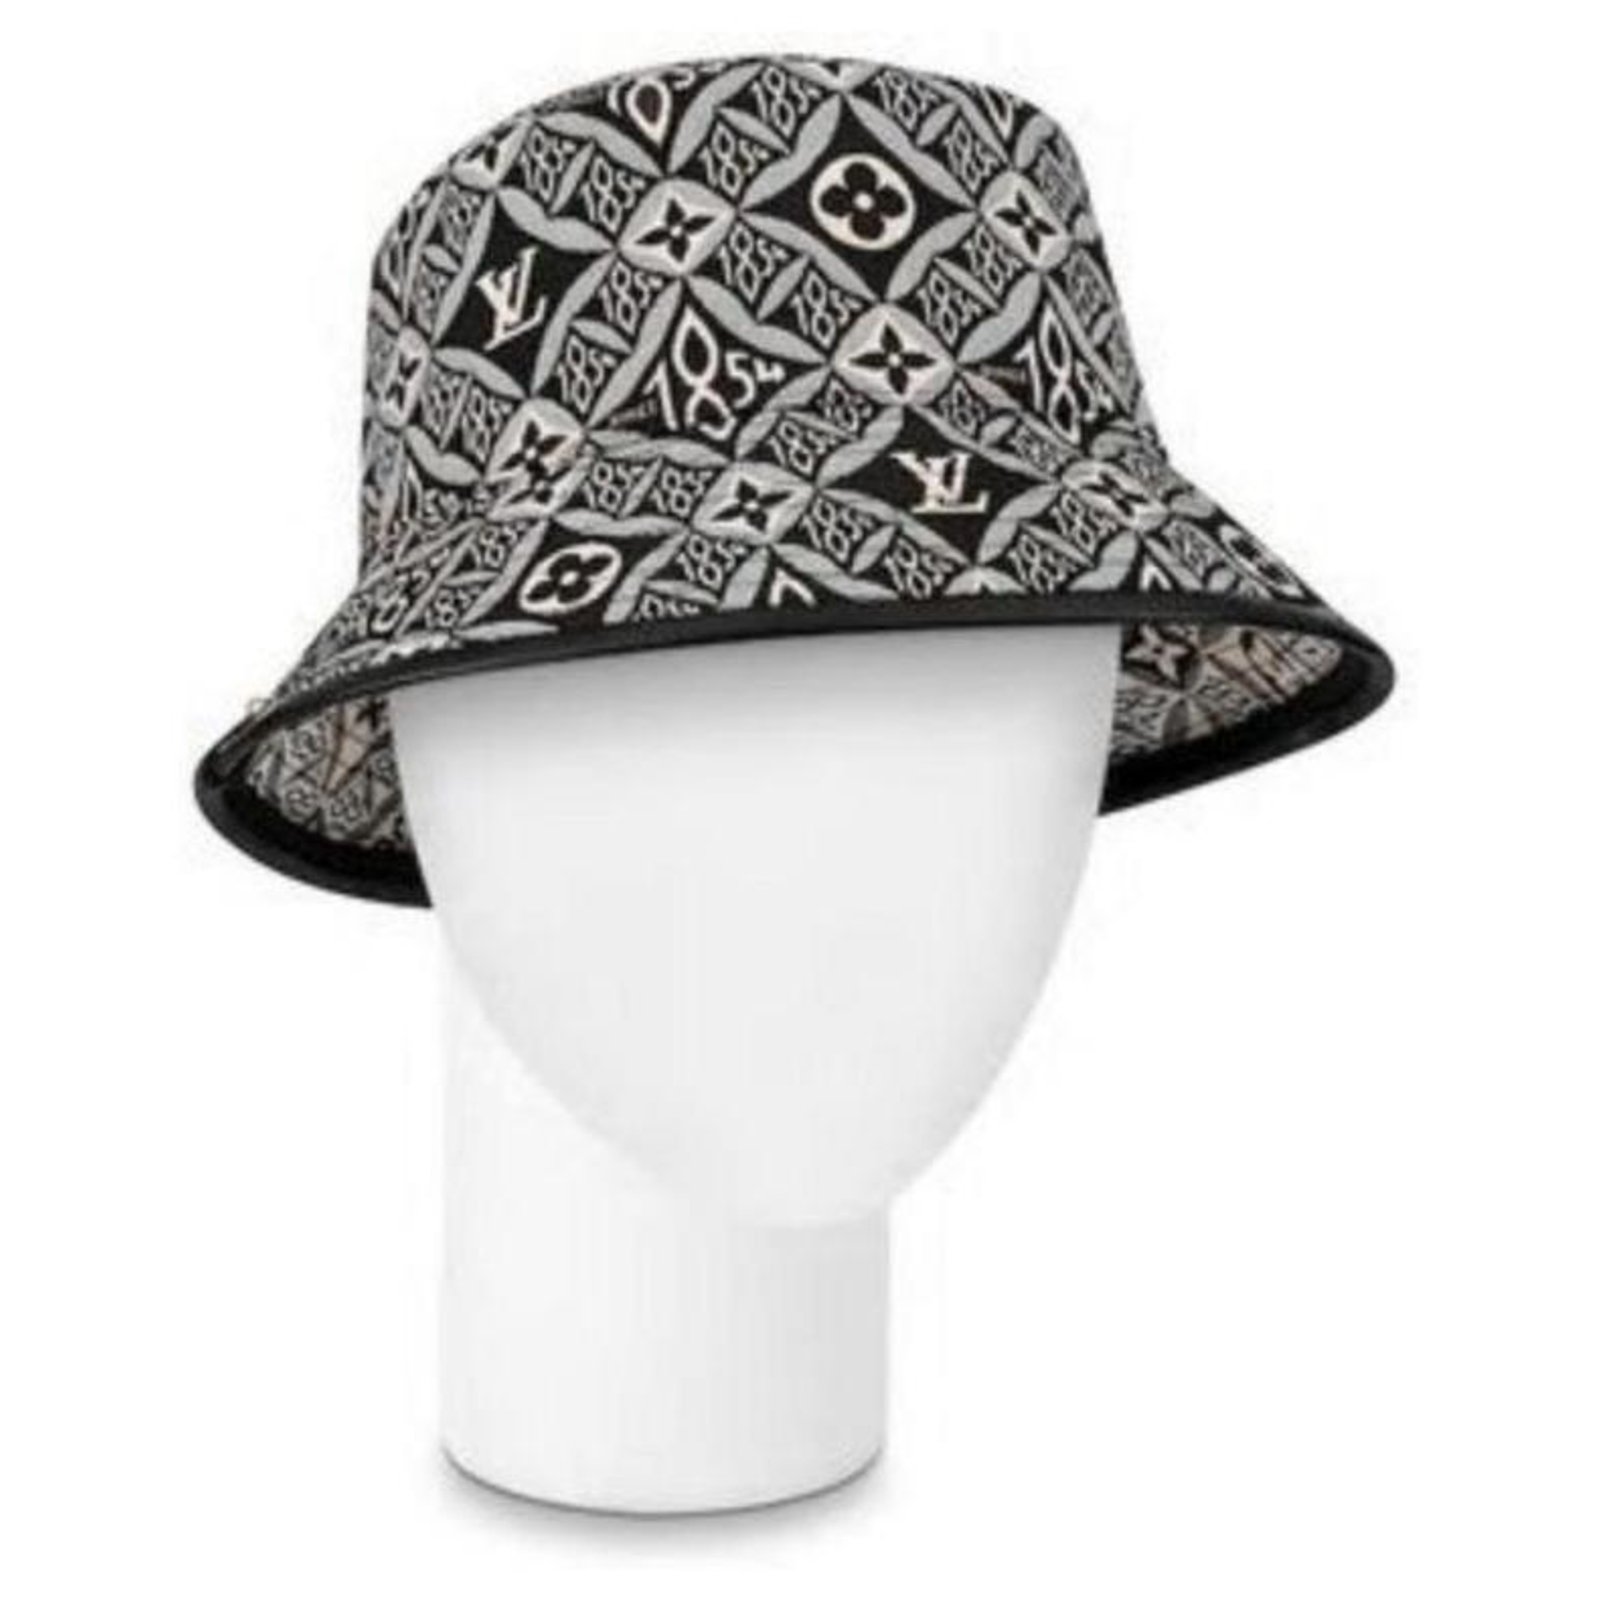 LOUIS VUITTON Damen Hut/Mütze aus Wolle in Grau